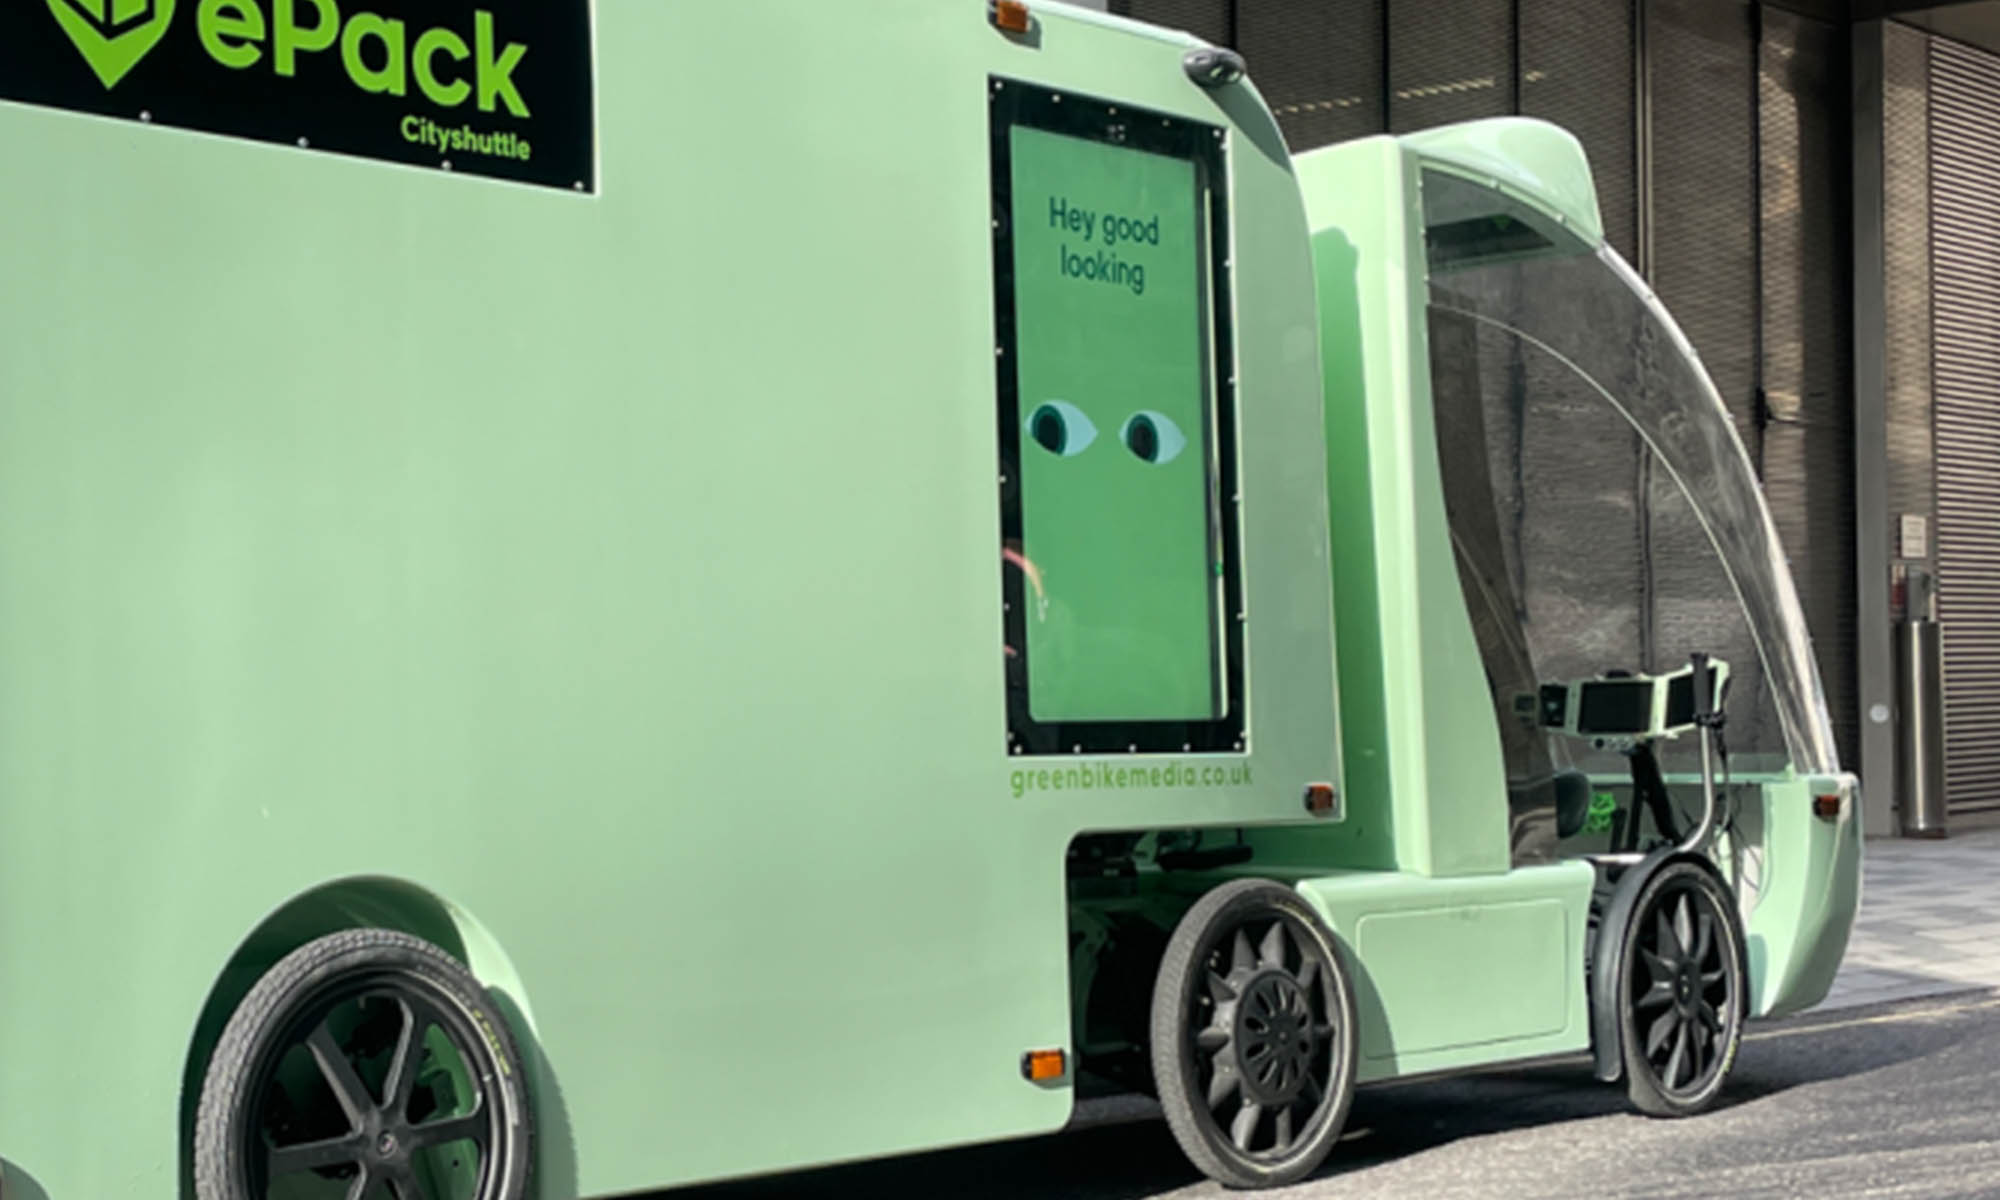 El diseño del ePack4 lo convierte en un vehículo de reparto con características únicas.